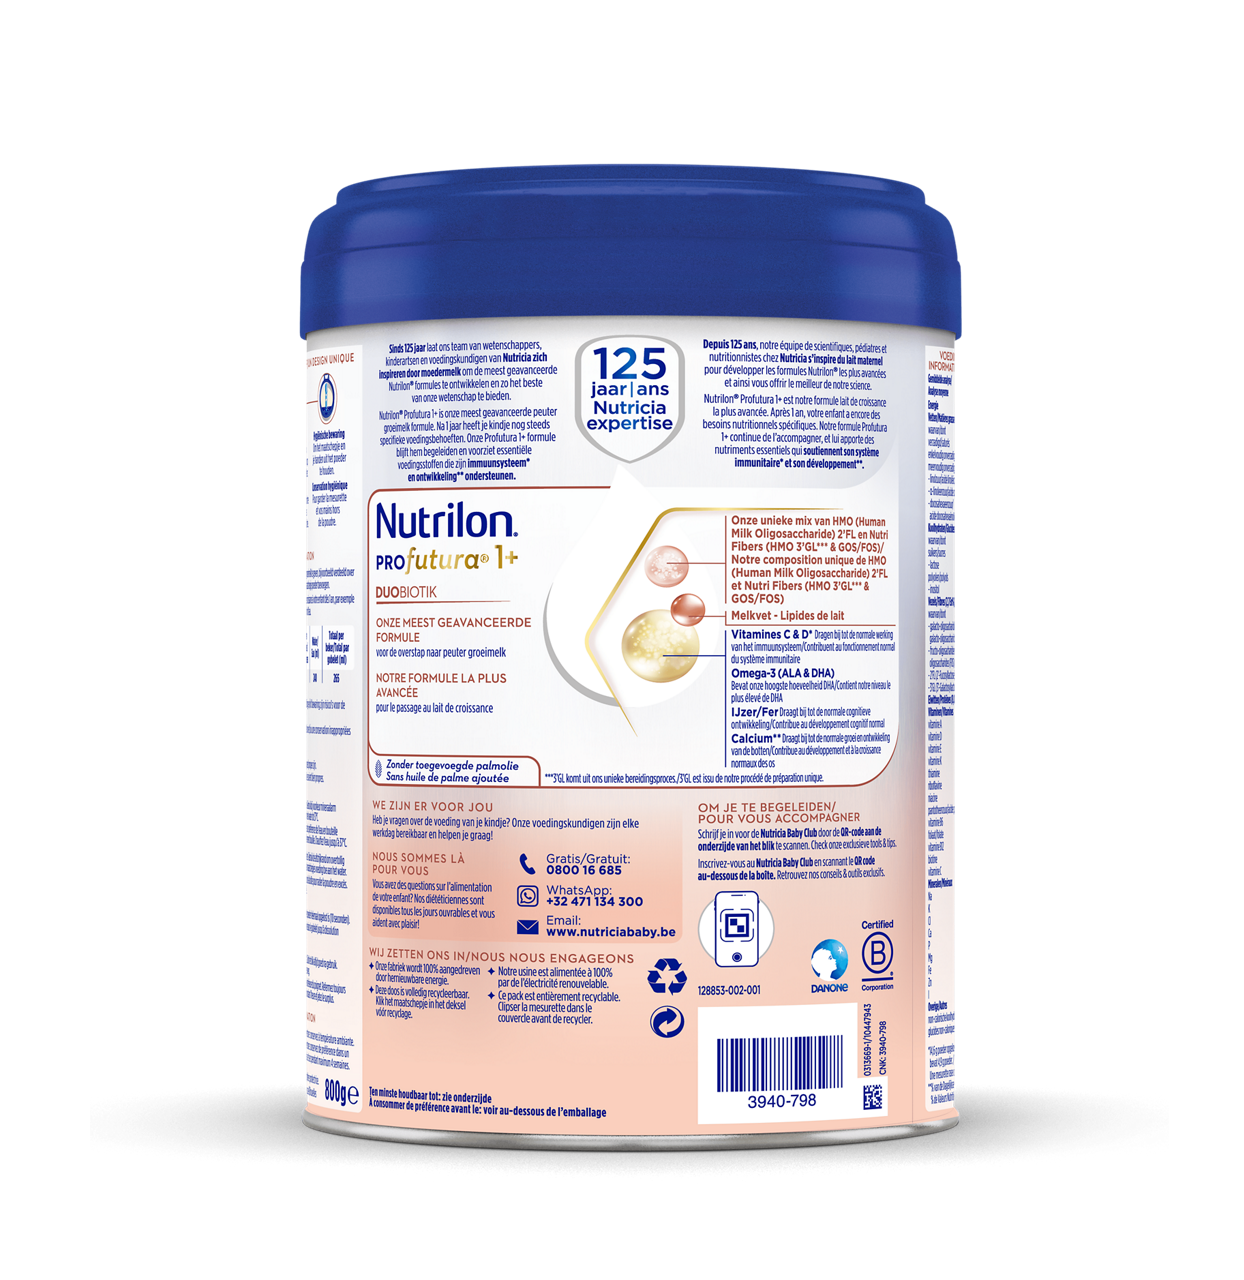 Nutrilon® Profutura 1+ est un lait de croissance, adapté aux besoins nutritionnels des enfants dès l'âge d'un an, en complément d'une alimentation saine et diversifiée.